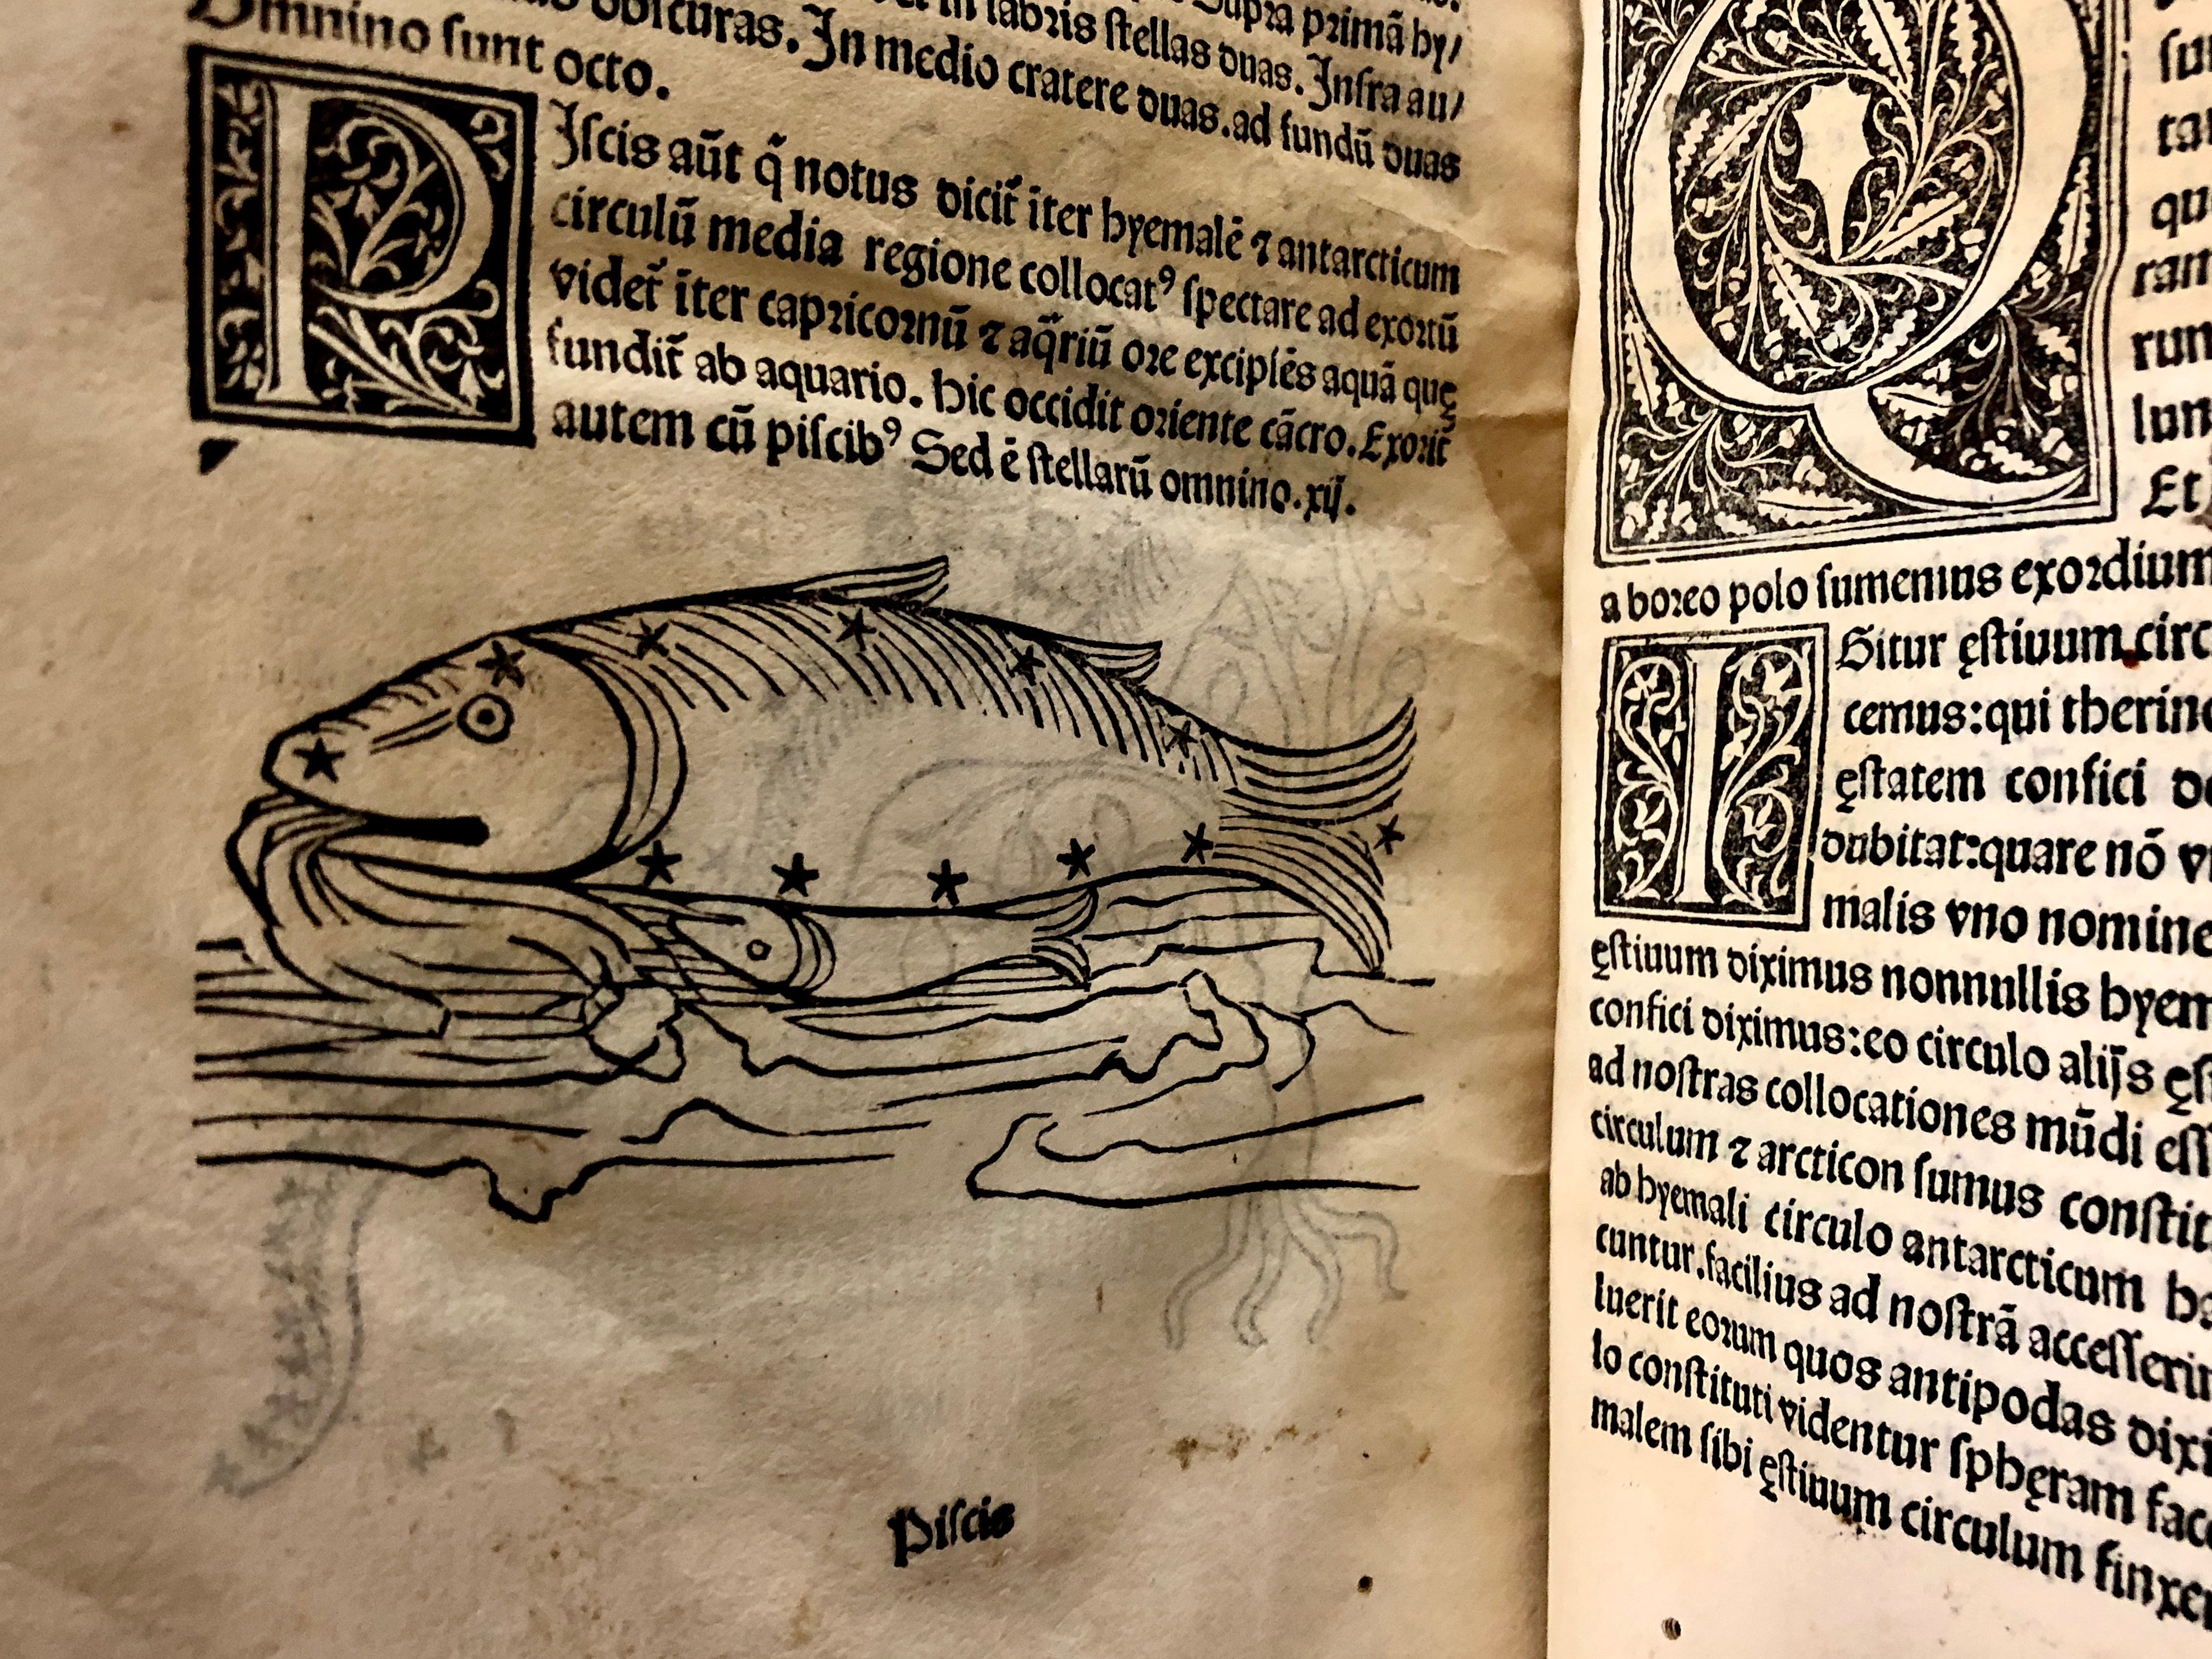 Starry fish in 'Nouicijs adolescetib': ad astronomica remp: capessenda aditu impenetratib' by Johannes de Sacro Bosco, 1482, Venice (Maddison Collection, 1D1) 